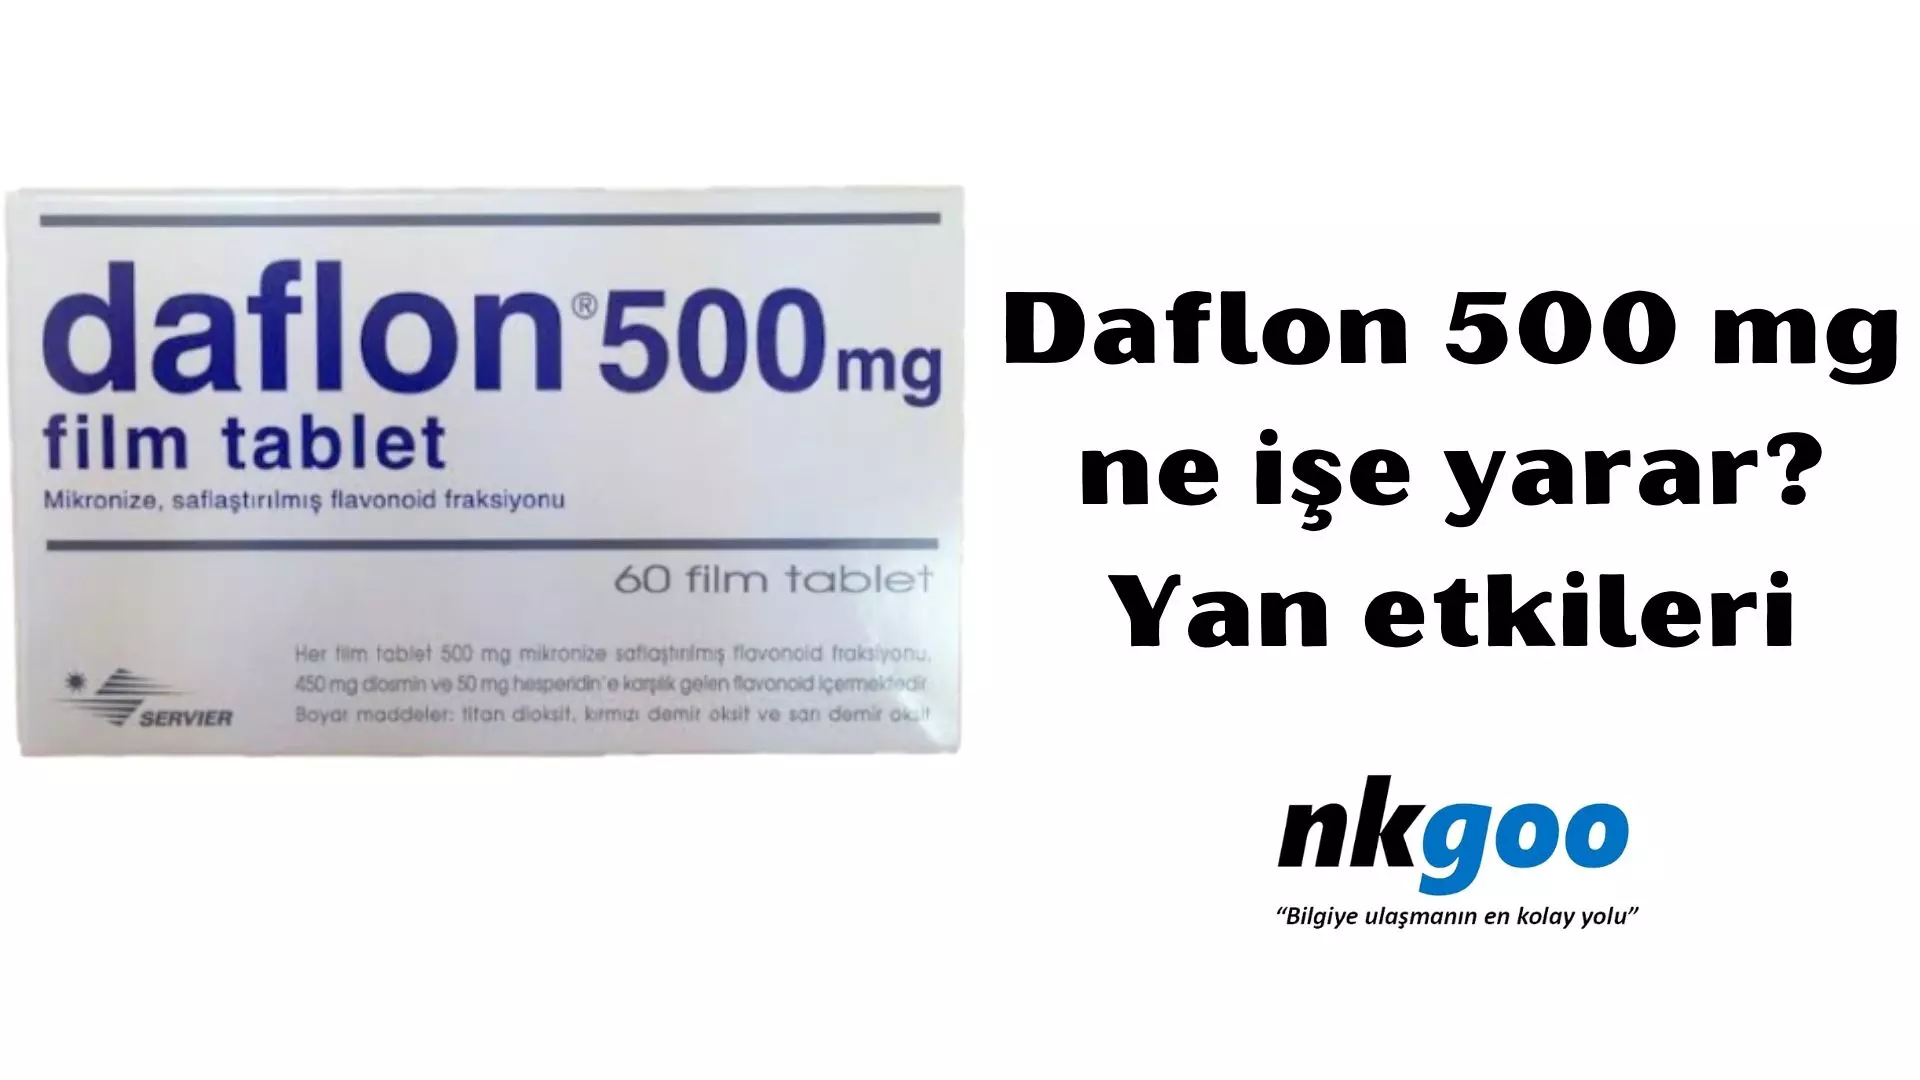 Daflon 500 mg ne işe yarar? Yan etkileri